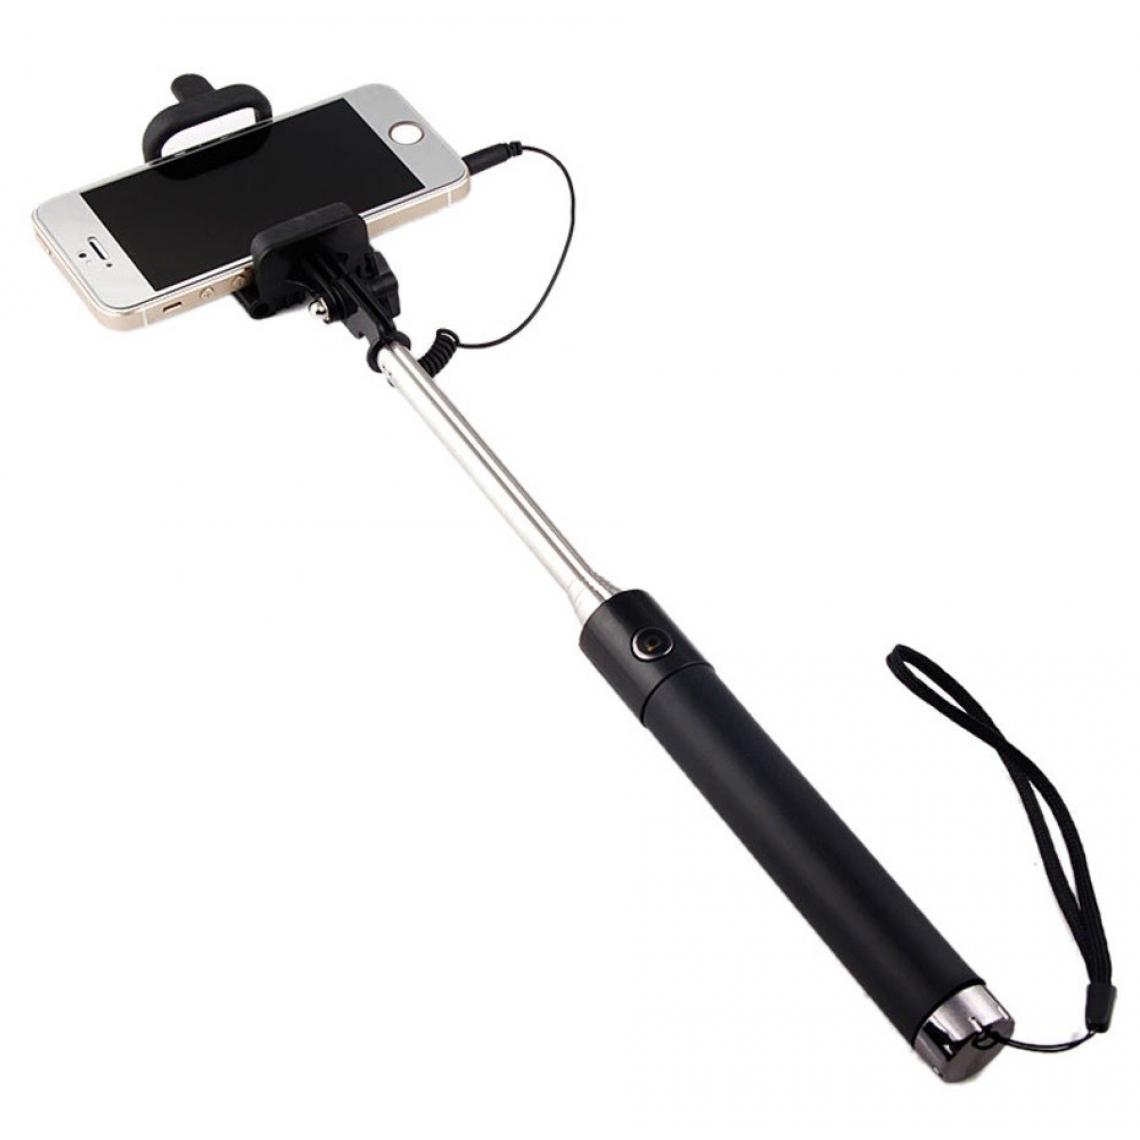 Shot - Perche Selfie Metal pour HUAWEI Mate 30 Pro Smartphone avec Cable Jack Selfie Stick Android IOS Reglable Bouton Photo (NOIR) - Autres accessoires smartphone